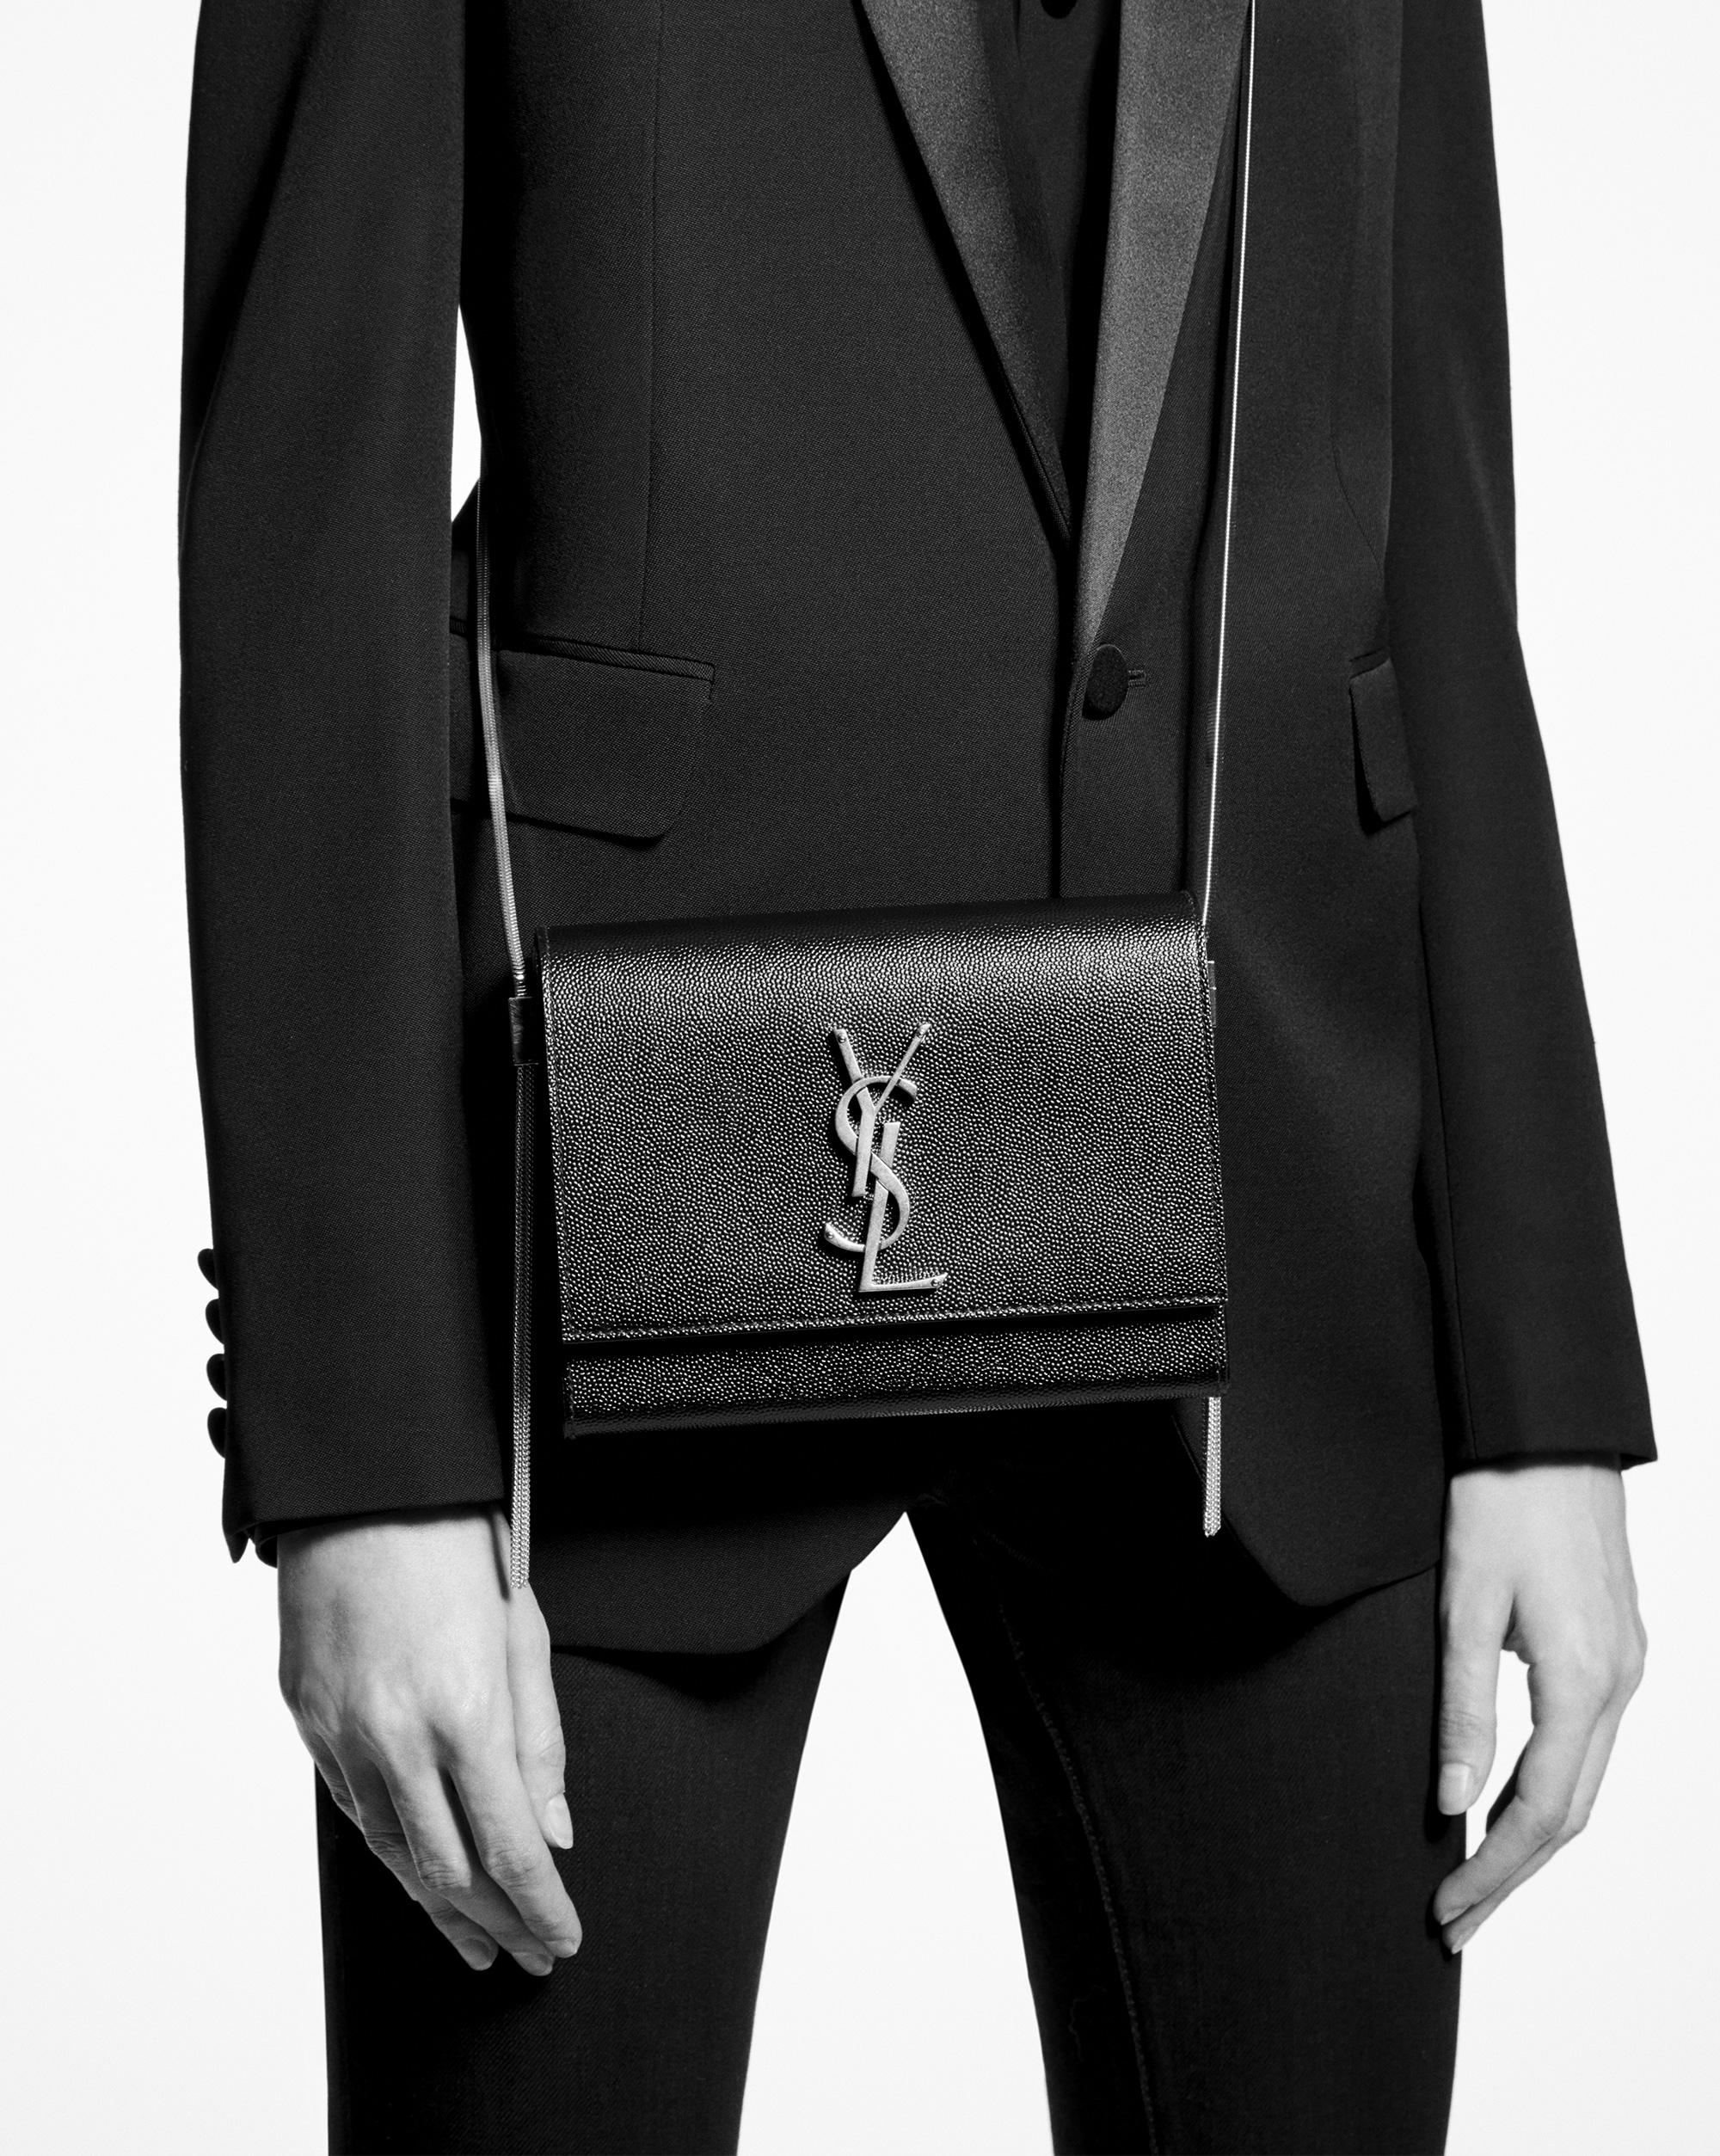 Saint Laurent Kate Box Bag in Black